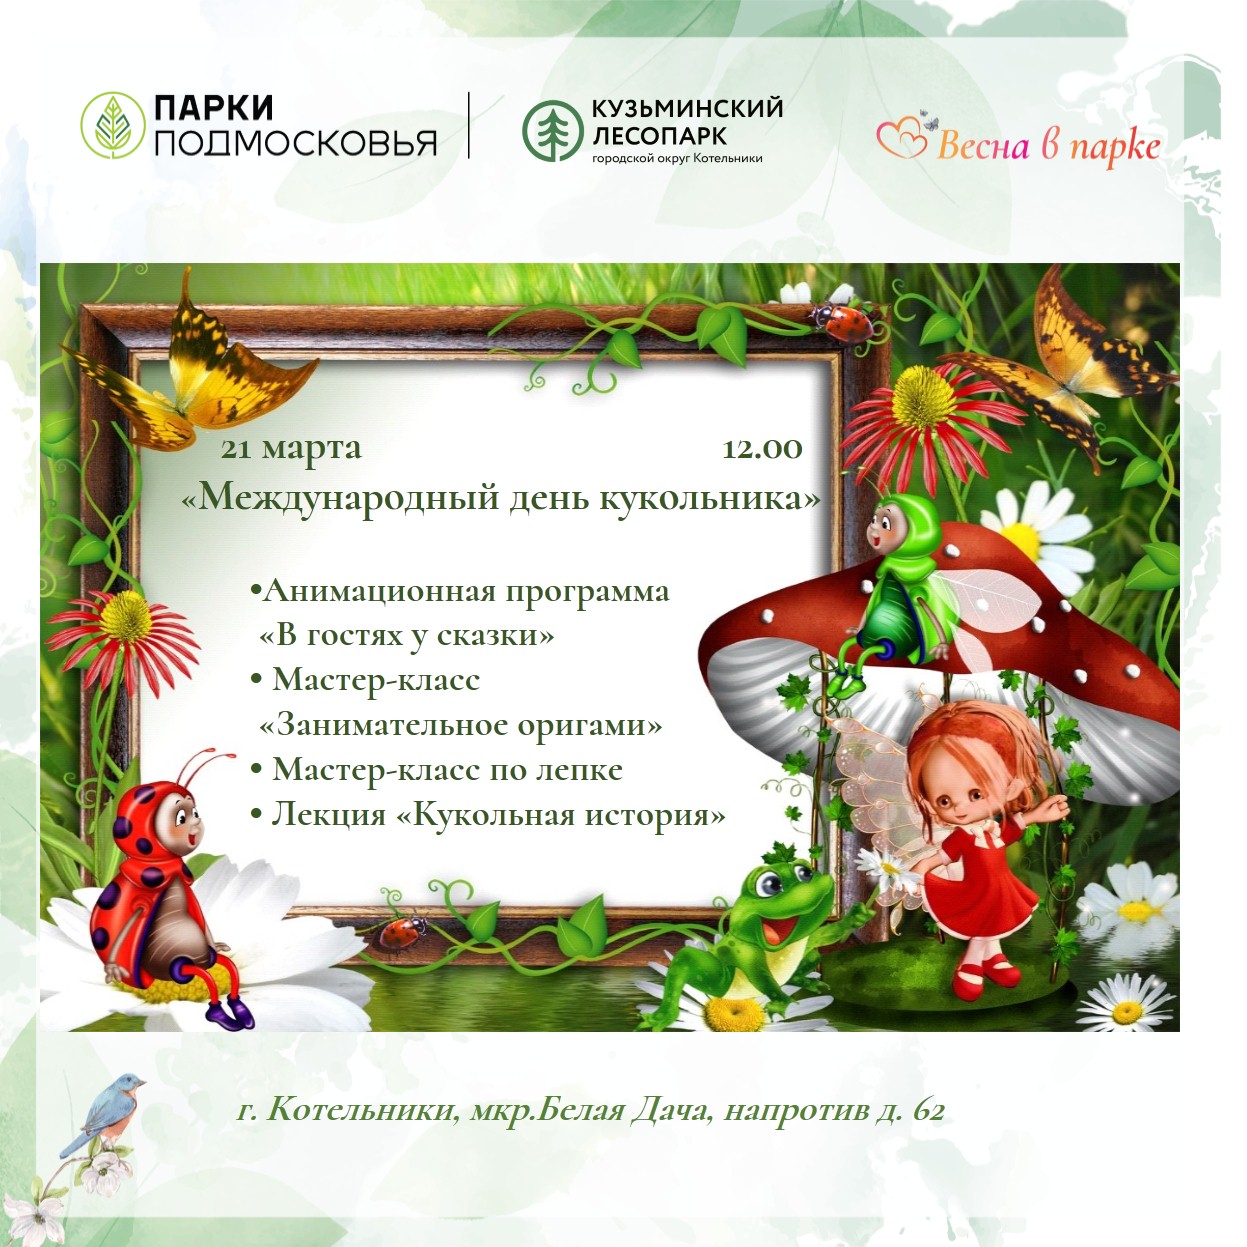 Международный день кукольника в Кузьминском лесопарке